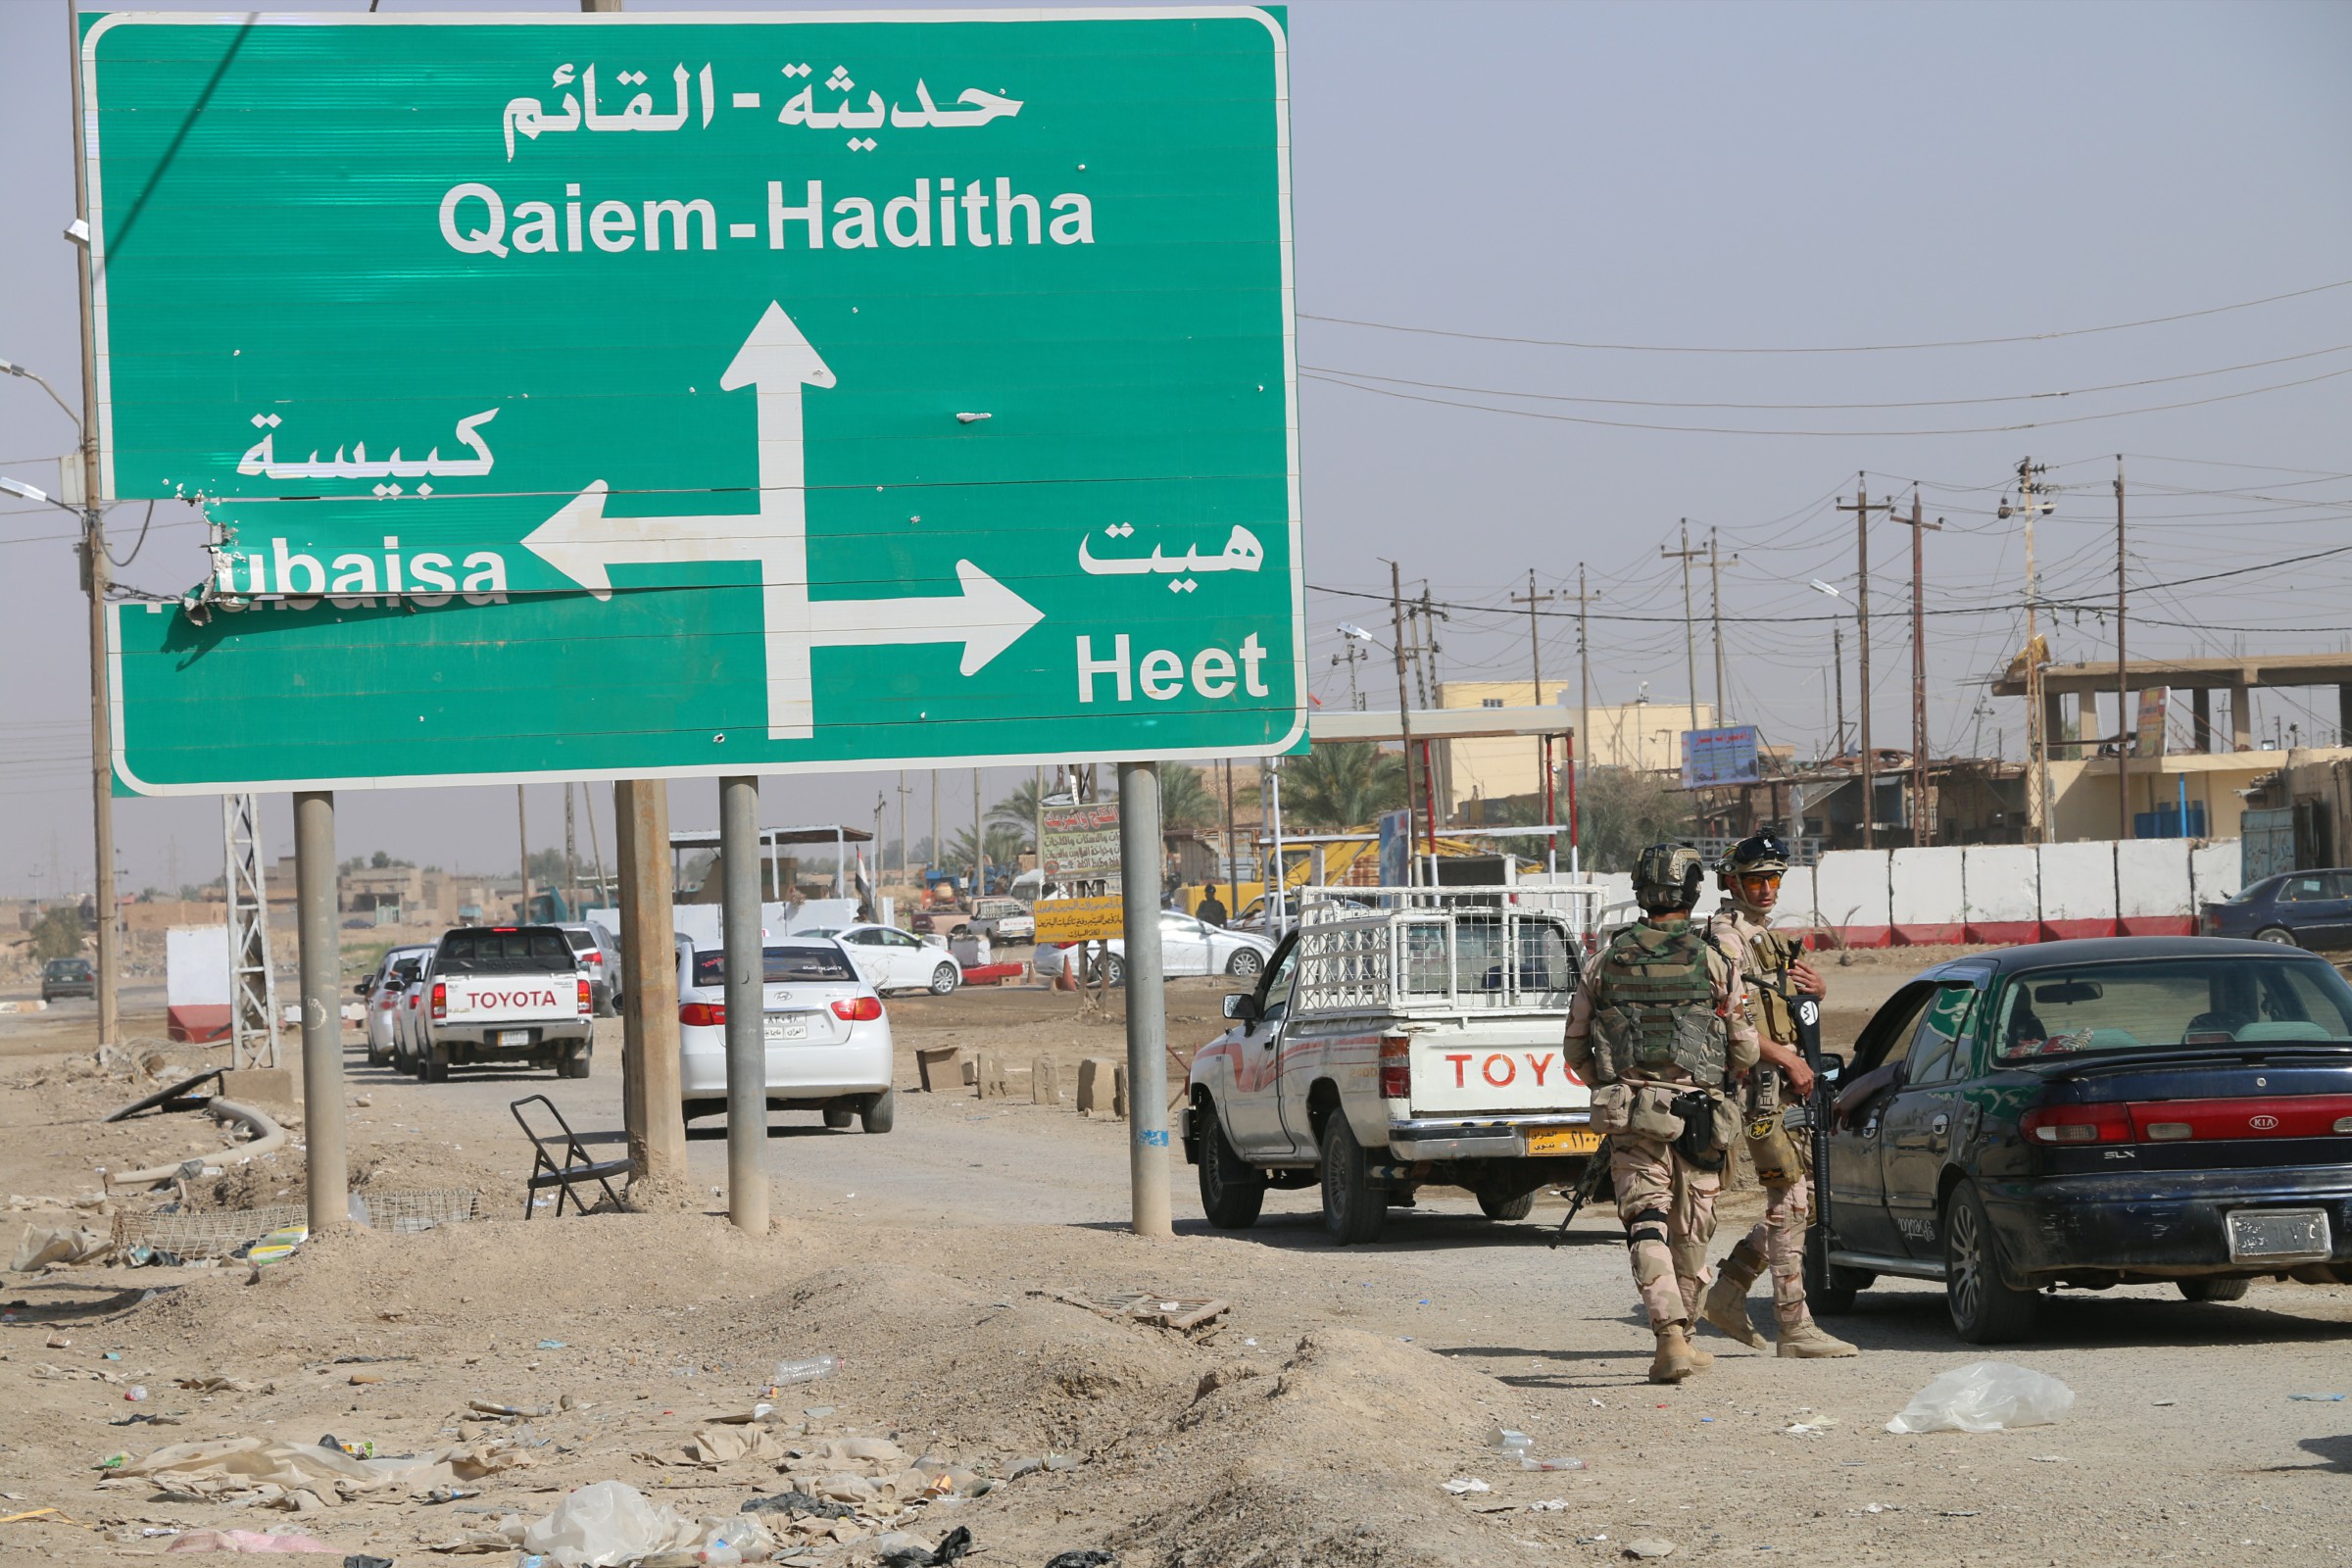 مجلس هيت يعلن مقتل أربعة انتحاريين من “داعش” حاولوا التسلل الى الدولاب